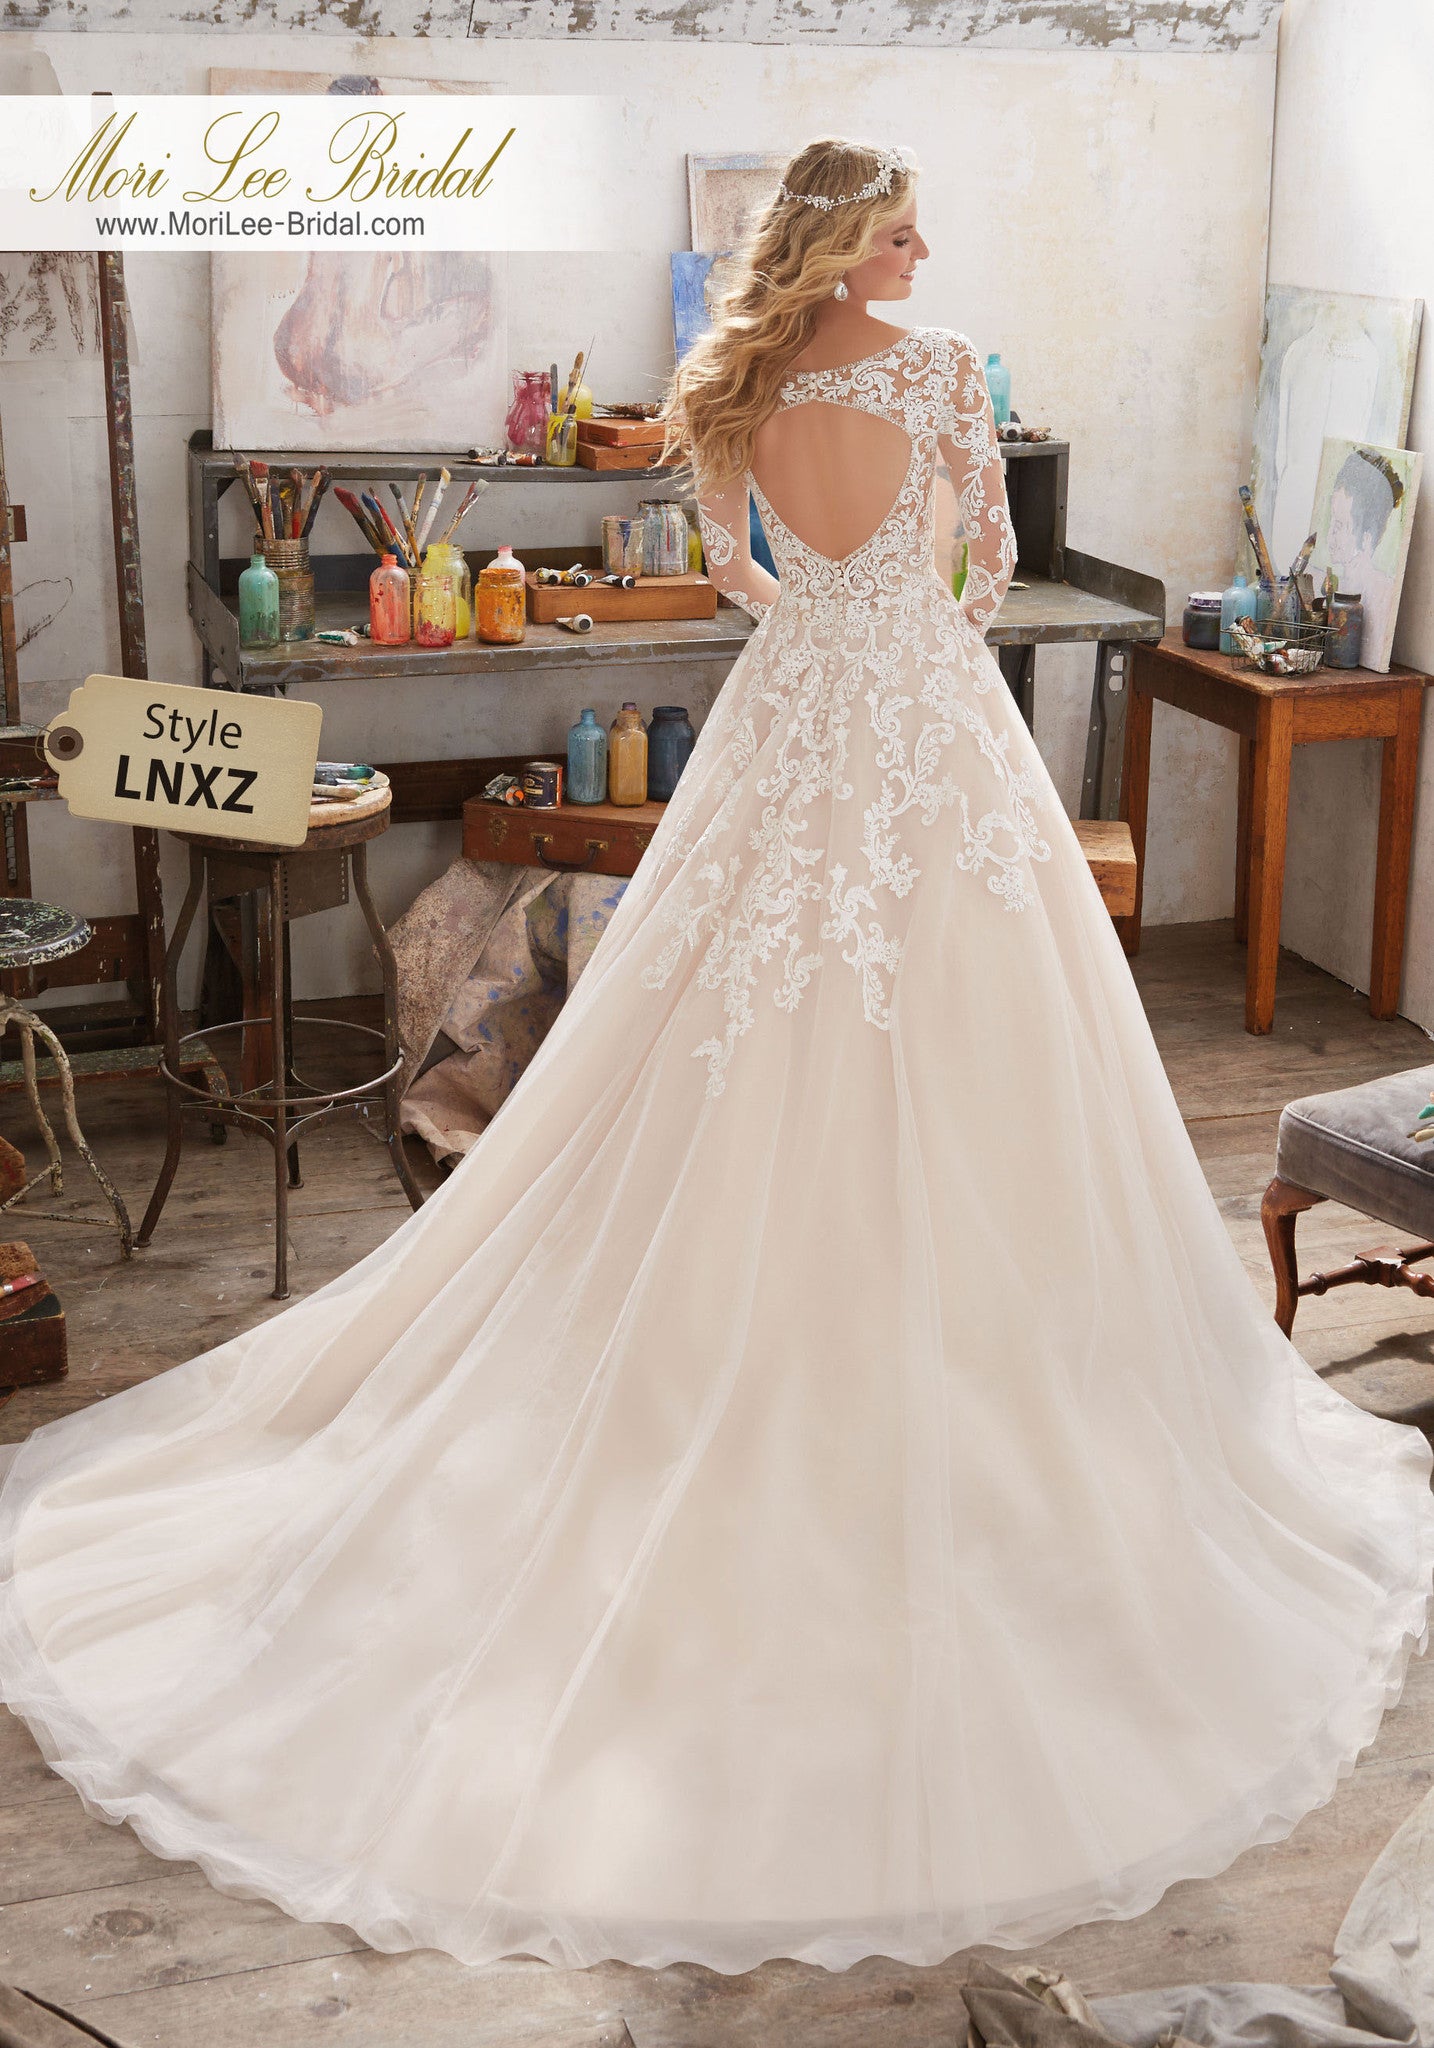 Vestido de novia de manga larga con delicados abalorios de cristal en el corpiño y apliques bordados en tul. Escote en V y espalda abierta. LNXZ*